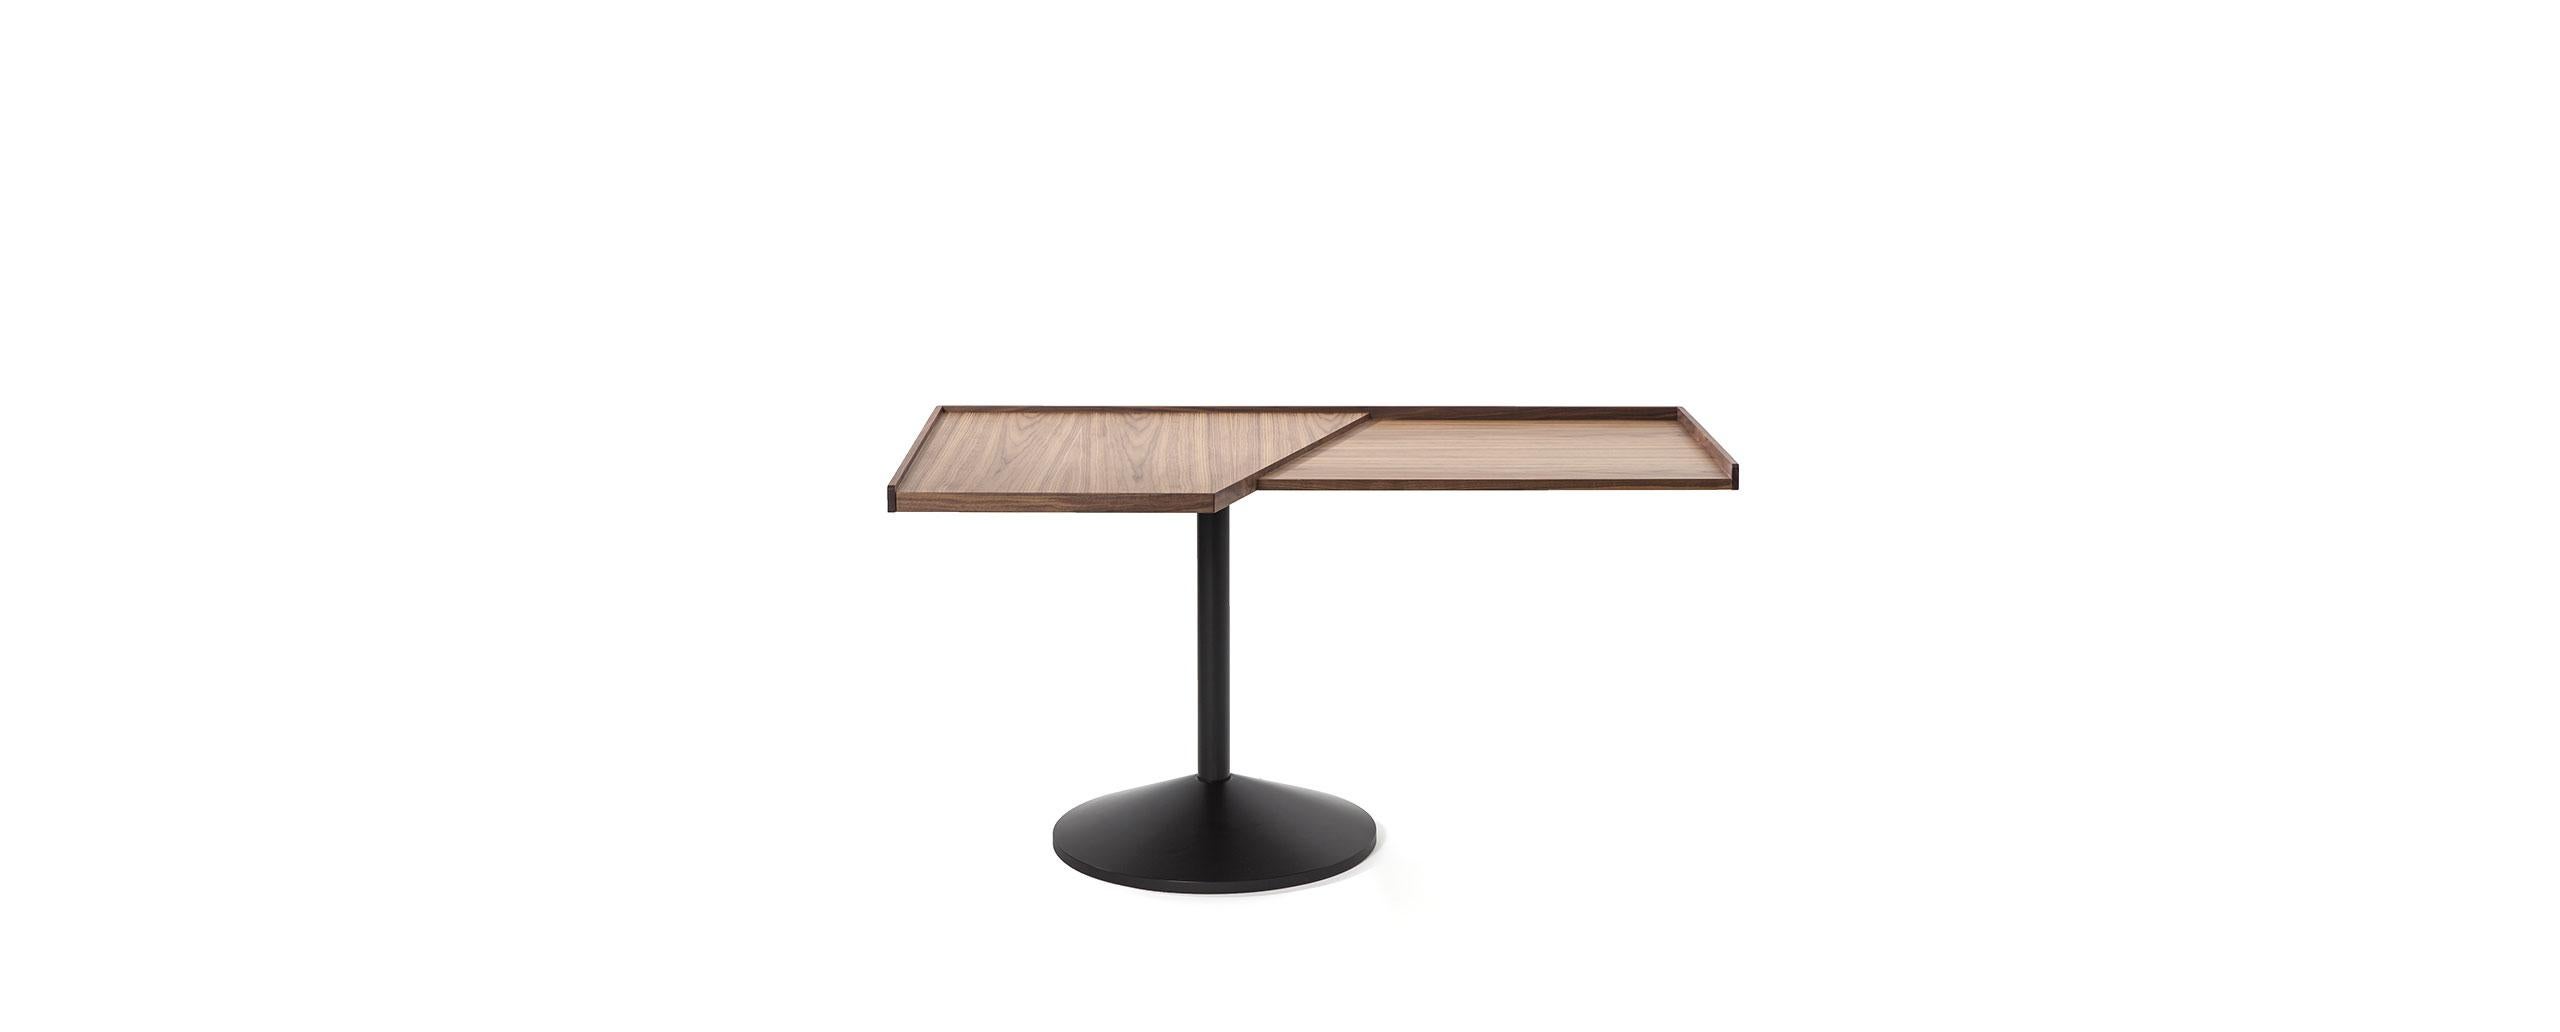 Table conçue par Franco Albini en 1954.
Fabriqué par Cassina en Italie.

Cette table/bureau, conçue par Franco Albini, est constituée de deux plans trapézoïdaux, l'un plus petit que l'autre, sur un seul support en acier. Ce jeu d'équilibre est